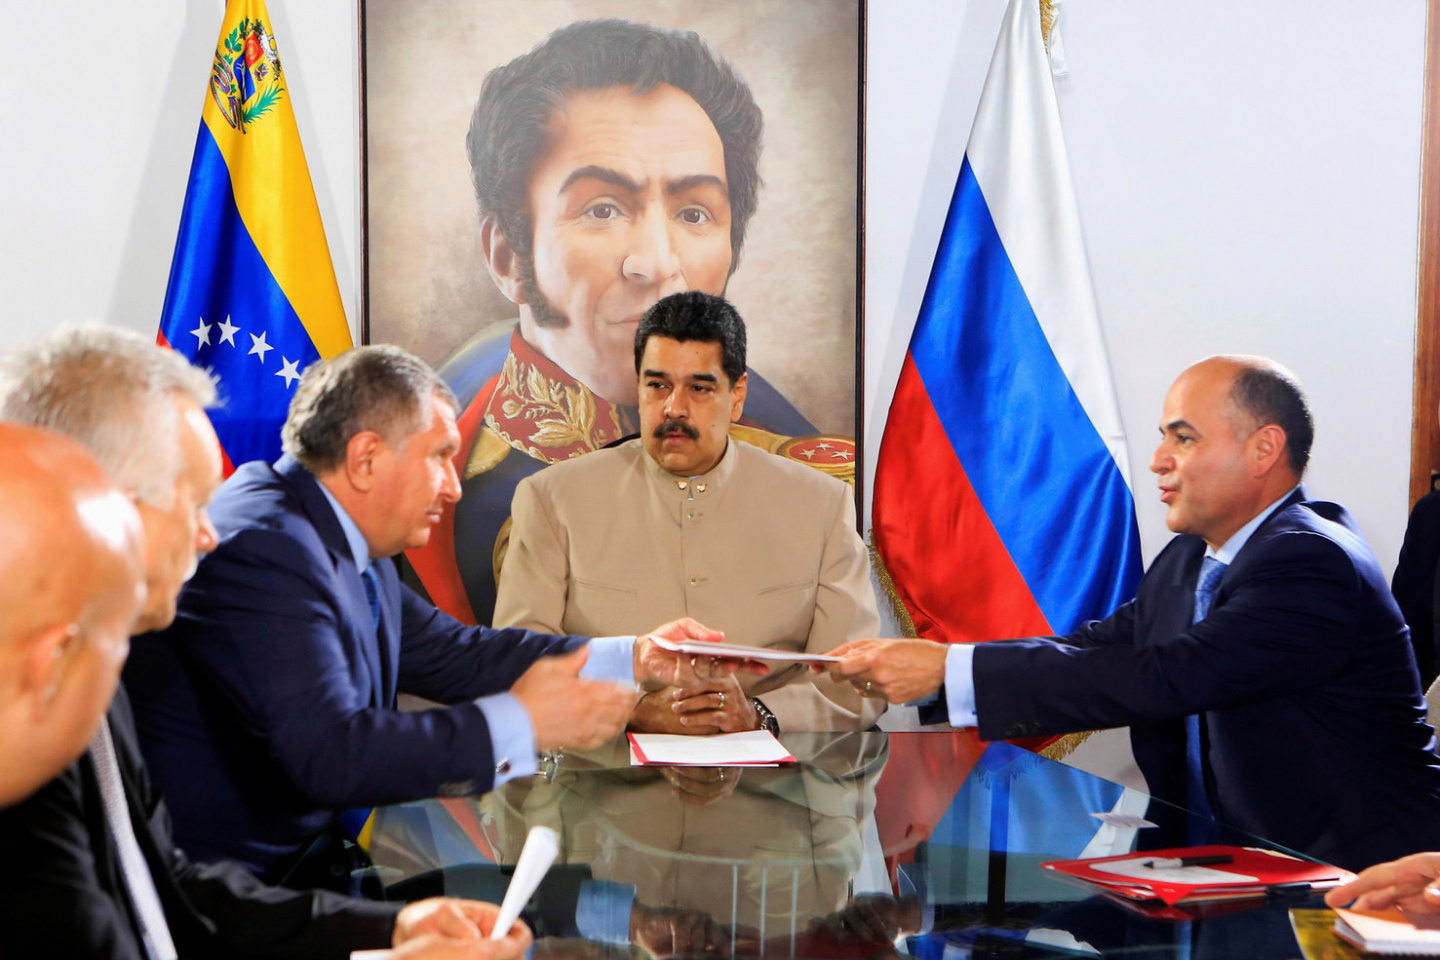 Αυστηρή προειδοποίηση Λαβρόφ σε ΗΠΑ: «Μην επιχειρήσετε να αναμιχθείτε στα εσωτερικά της Βενεζουέλας»